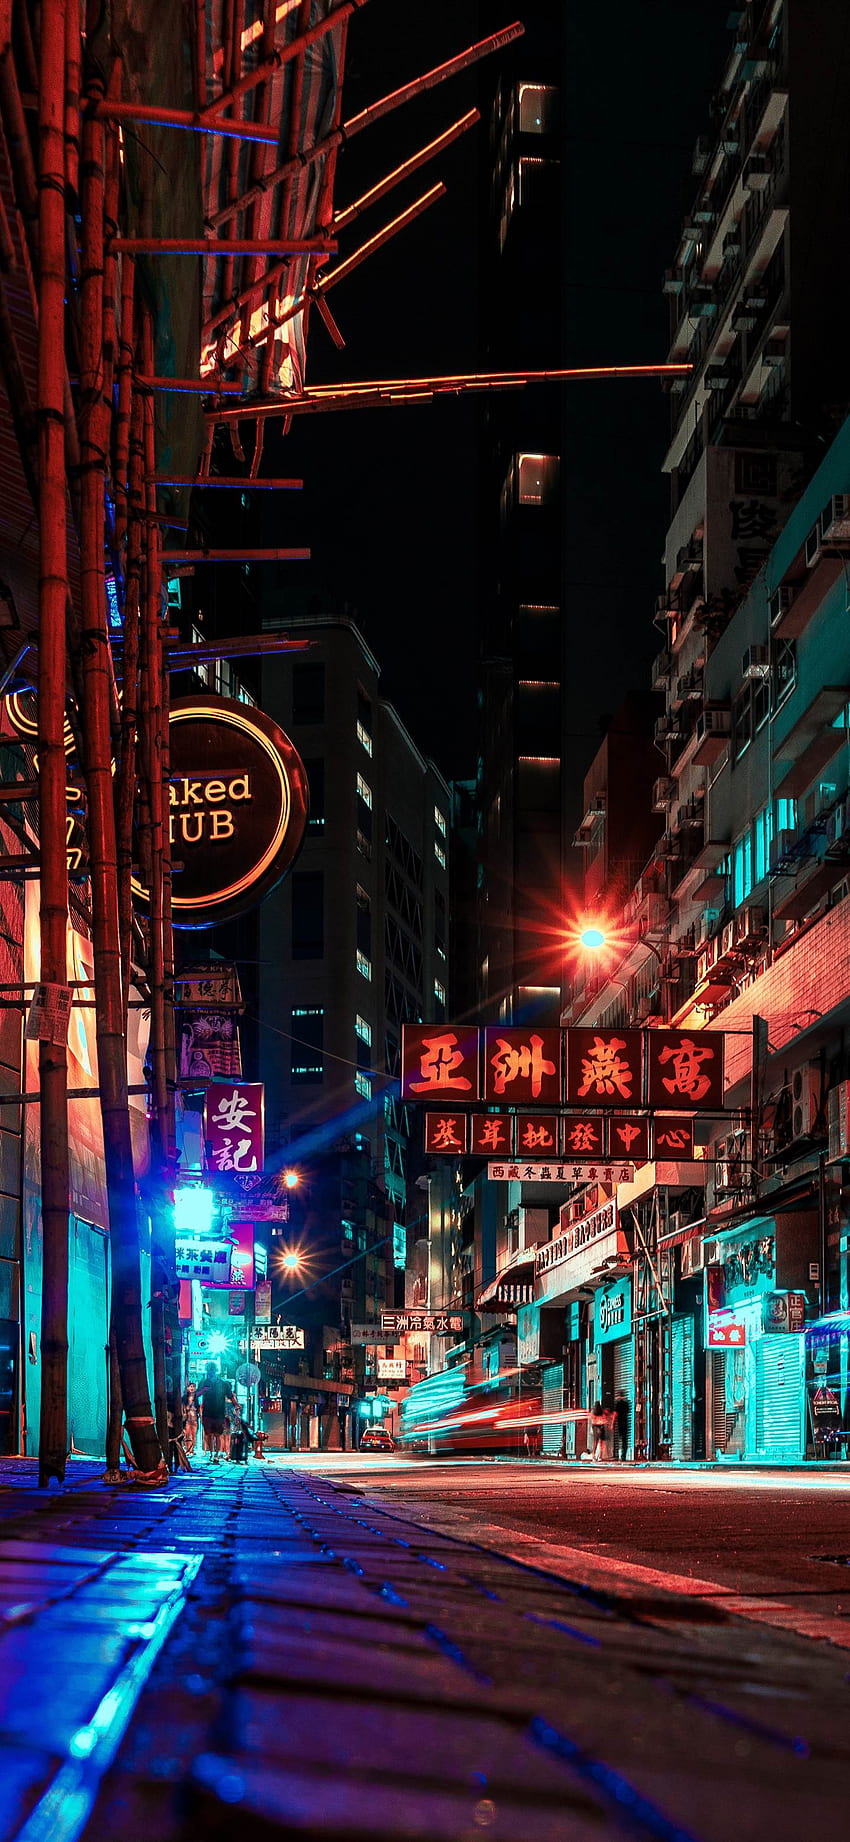 night in Hong Kong - Android Phone, Hong Kong Night View HD phone wallpaper